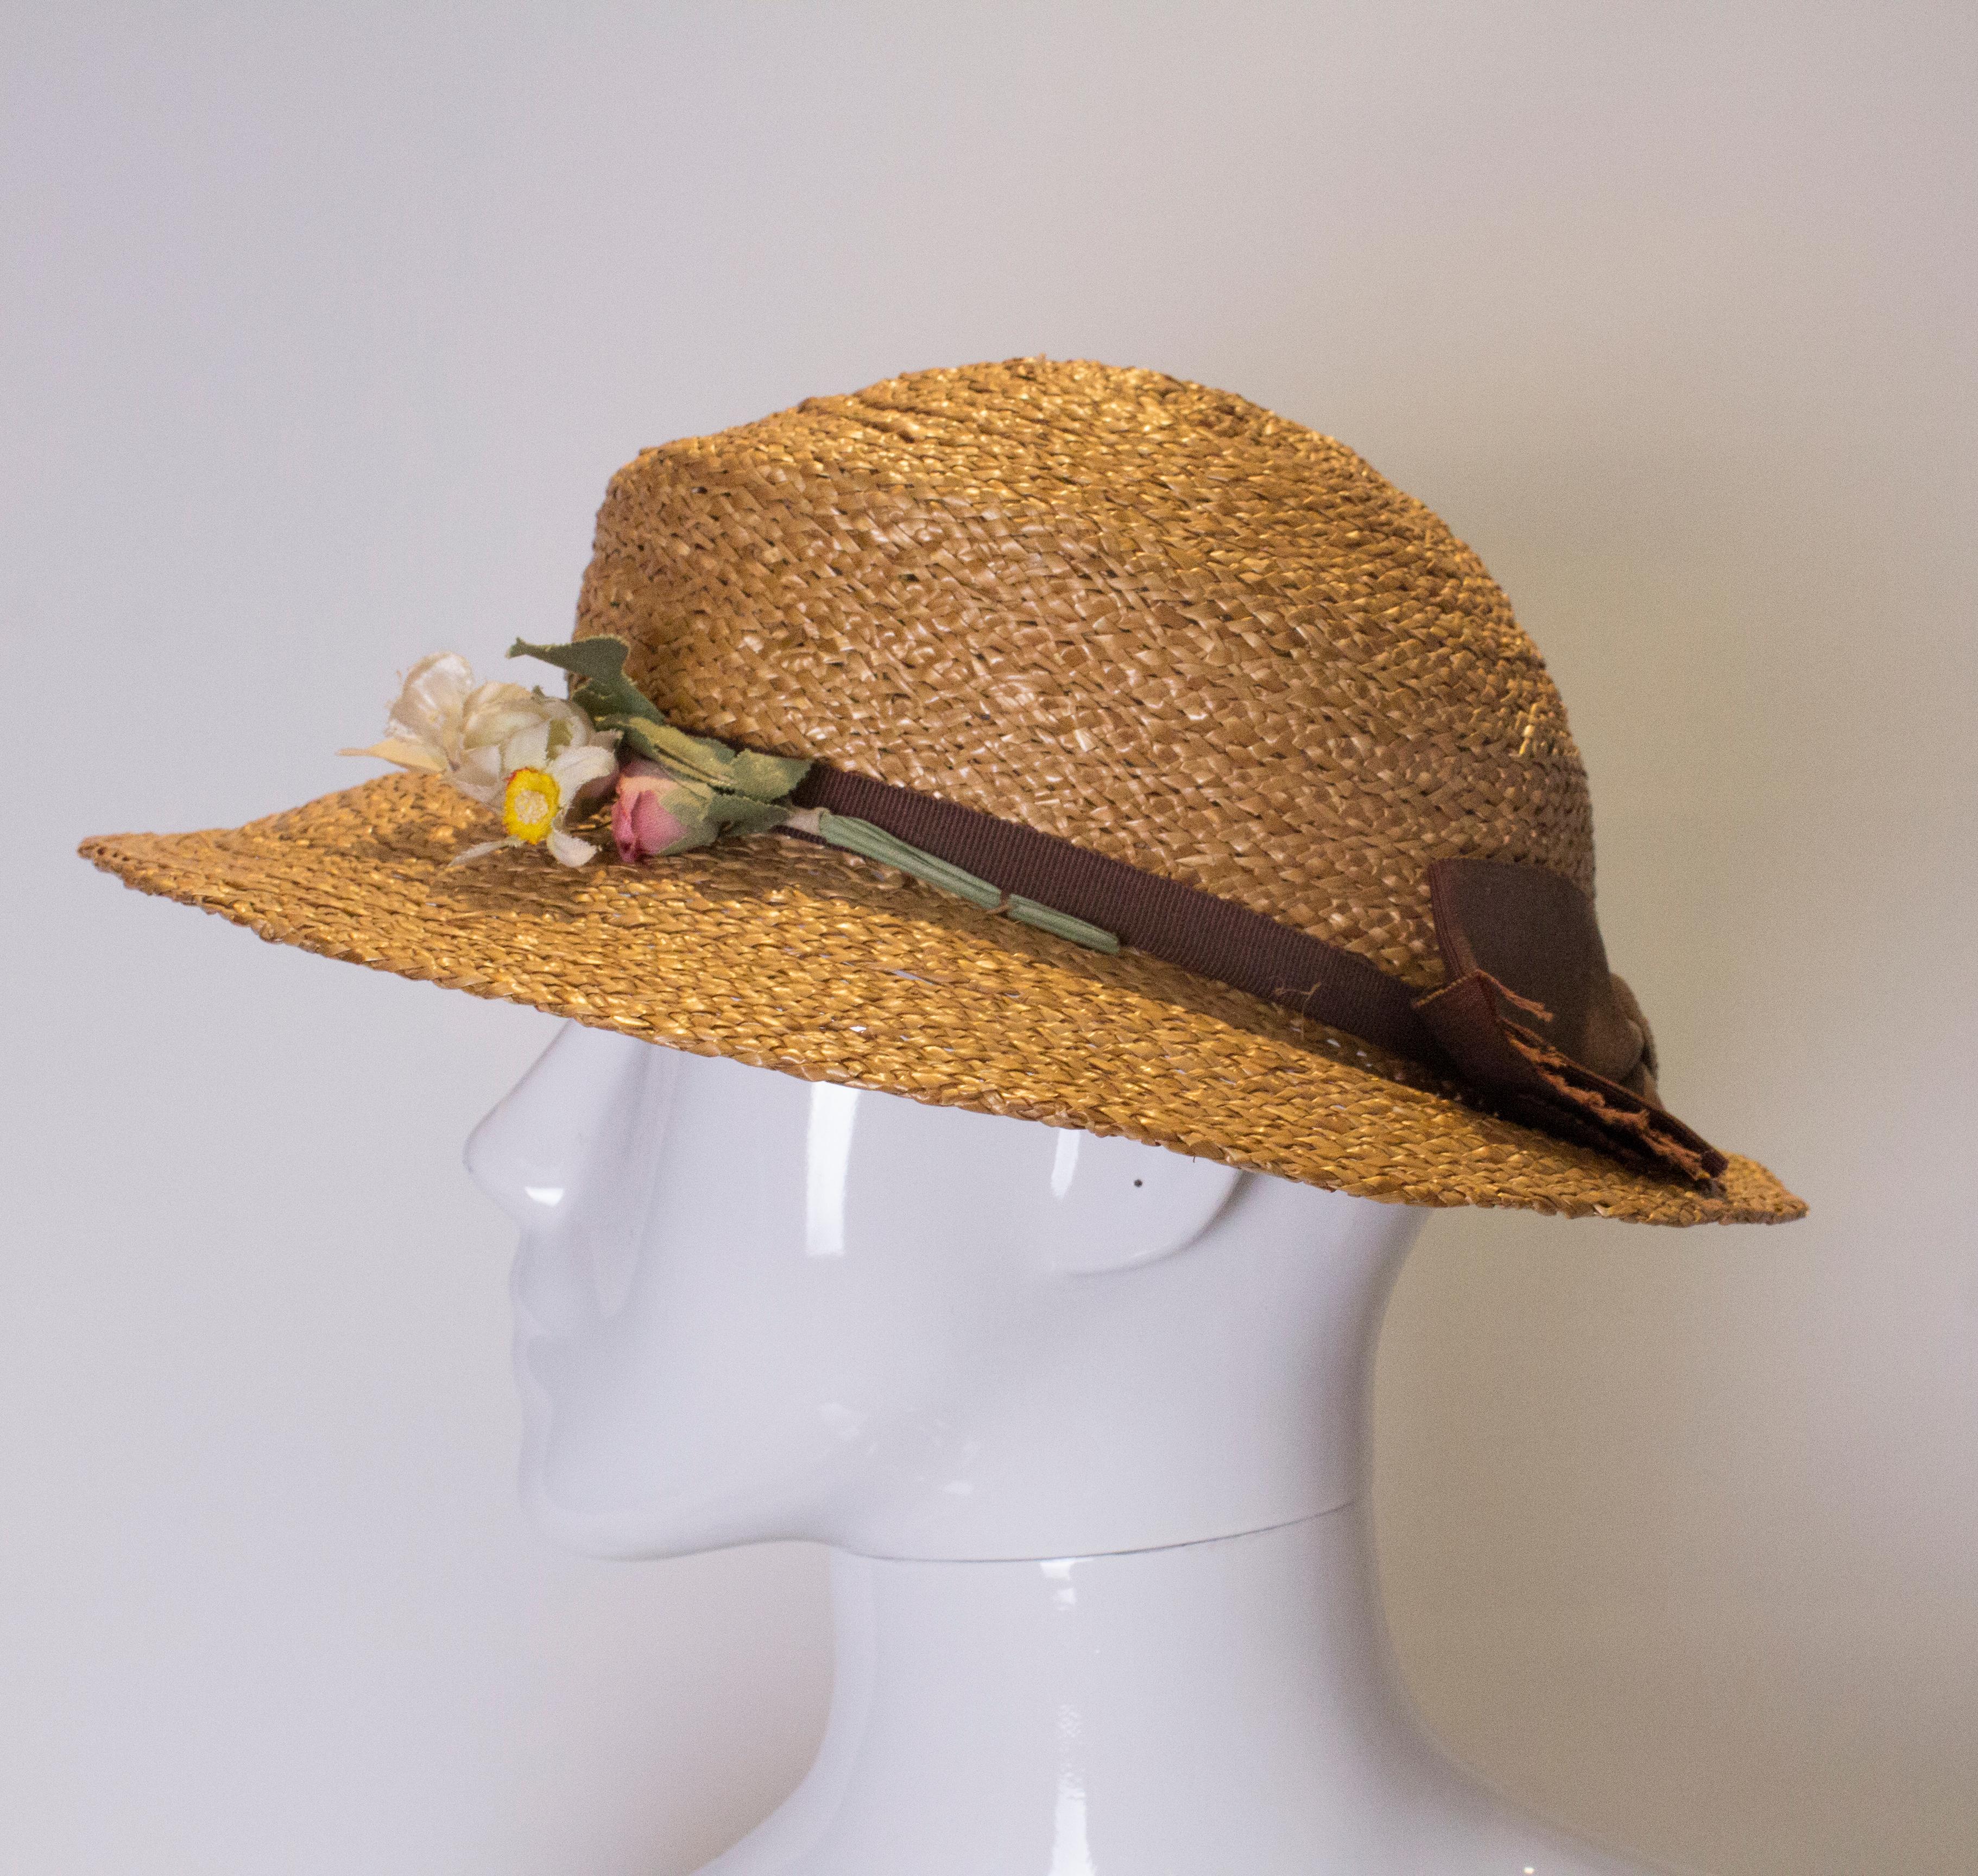 
Ein hübscher Hut für den Sommer. Dieser Vintage-Strohhut hat ein braunes Band und misst innen 22 cm im Umfang.